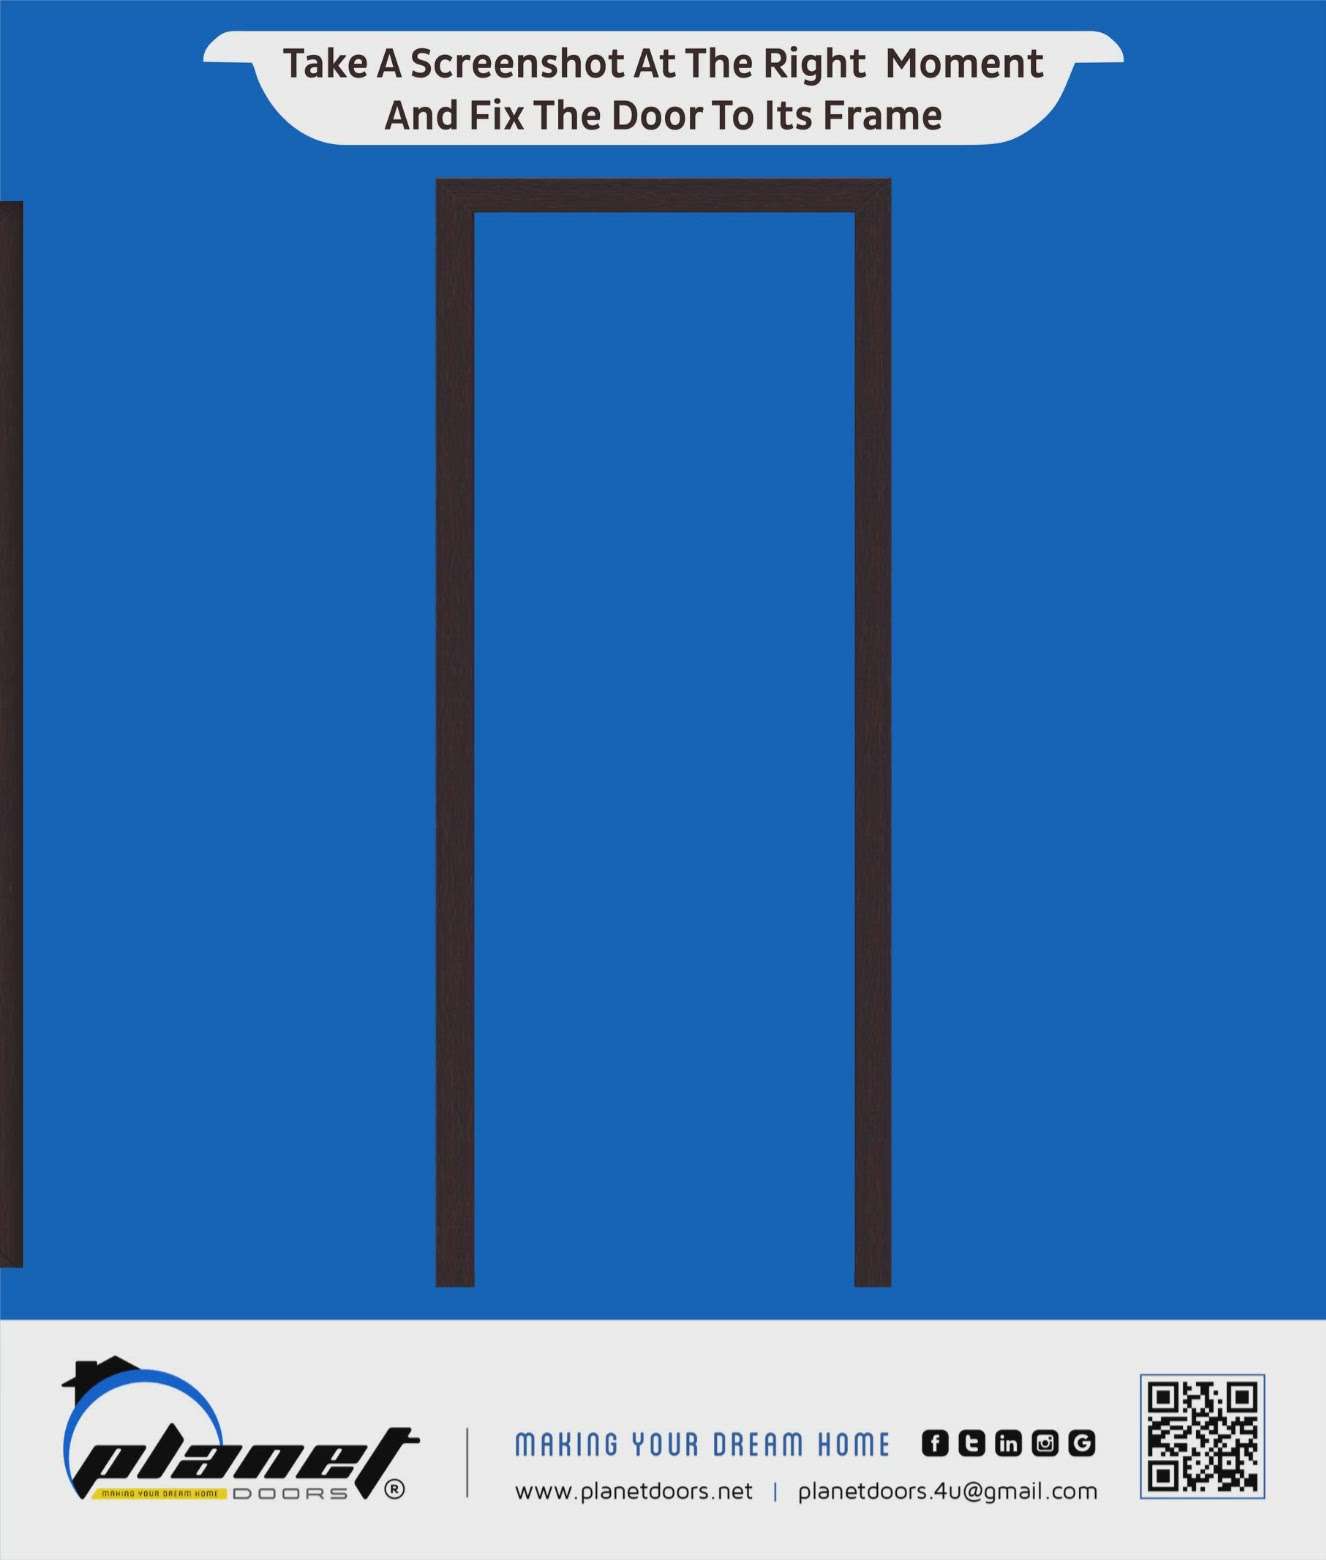 𝗣𝗟𝗔𝗡𝗘𝗧 𝗗𝗢𝗢𝗥𝗦🚪𝗠𝗔𝗞𝗜𝗡𝗚 𝗬𝗢𝗨𝗥 𝗗𝗥𝗘𝗔𝗠 𝗛𝗢𝗠𝗘 🏡

❞𝗧𝗮𝗸𝗲 𝗔 𝗦𝗰𝗿𝗲𝗲𝗻𝘀𝗵𝗼𝘁 𝗔𝘁 𝗧𝗵𝗲 𝗥𝗶𝗴𝗵𝘁 𝗠𝗼𝗺𝗲𝗻𝘁 𝗔𝗻𝗱 𝗙𝗶𝘅 𝗧𝗵𝗲 𝗗𝗼𝗼𝗿 𝗧𝗼 𝗜𝘁𝘀 𝗙𝗿𝗮𝗺𝗲❞

👉 For more details contact us: 04802964444 - 9054364444 - 9054864444.

👉 https://wa.me/919054364444 - https://wa.me/919054864444






#planetdoors #thrissur #kerala

#doors #pvc #upvc #frp #fiber #windows #deignerdoors #skindoors #wood #panel #steeldoors #glassdoors #upvcwindows #blinds #home #decor #interior